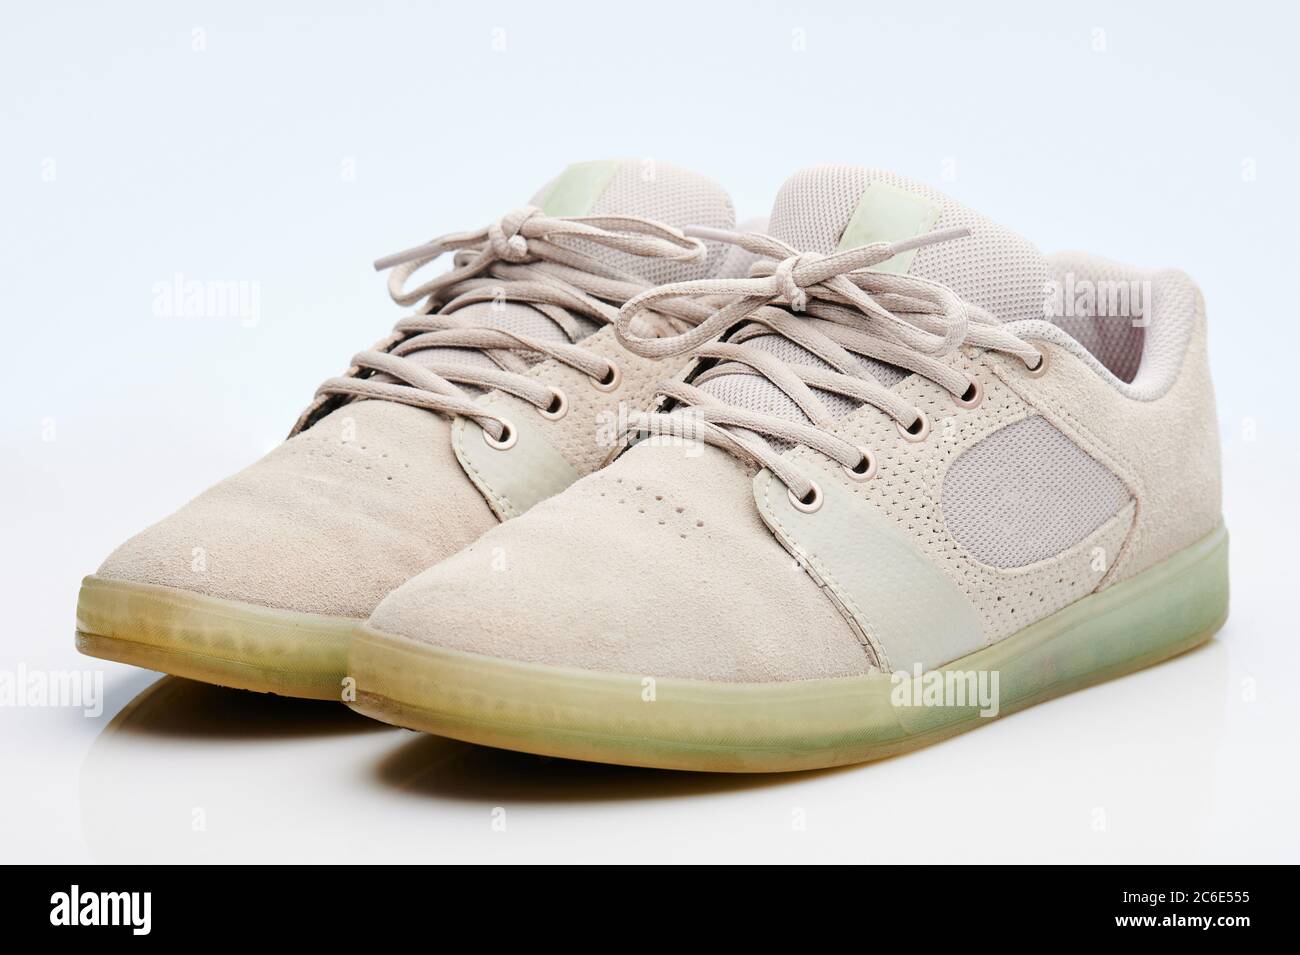 Tema calzature sportive. Paio di scarpe grigie isolate su sfondo bianco Foto Stock